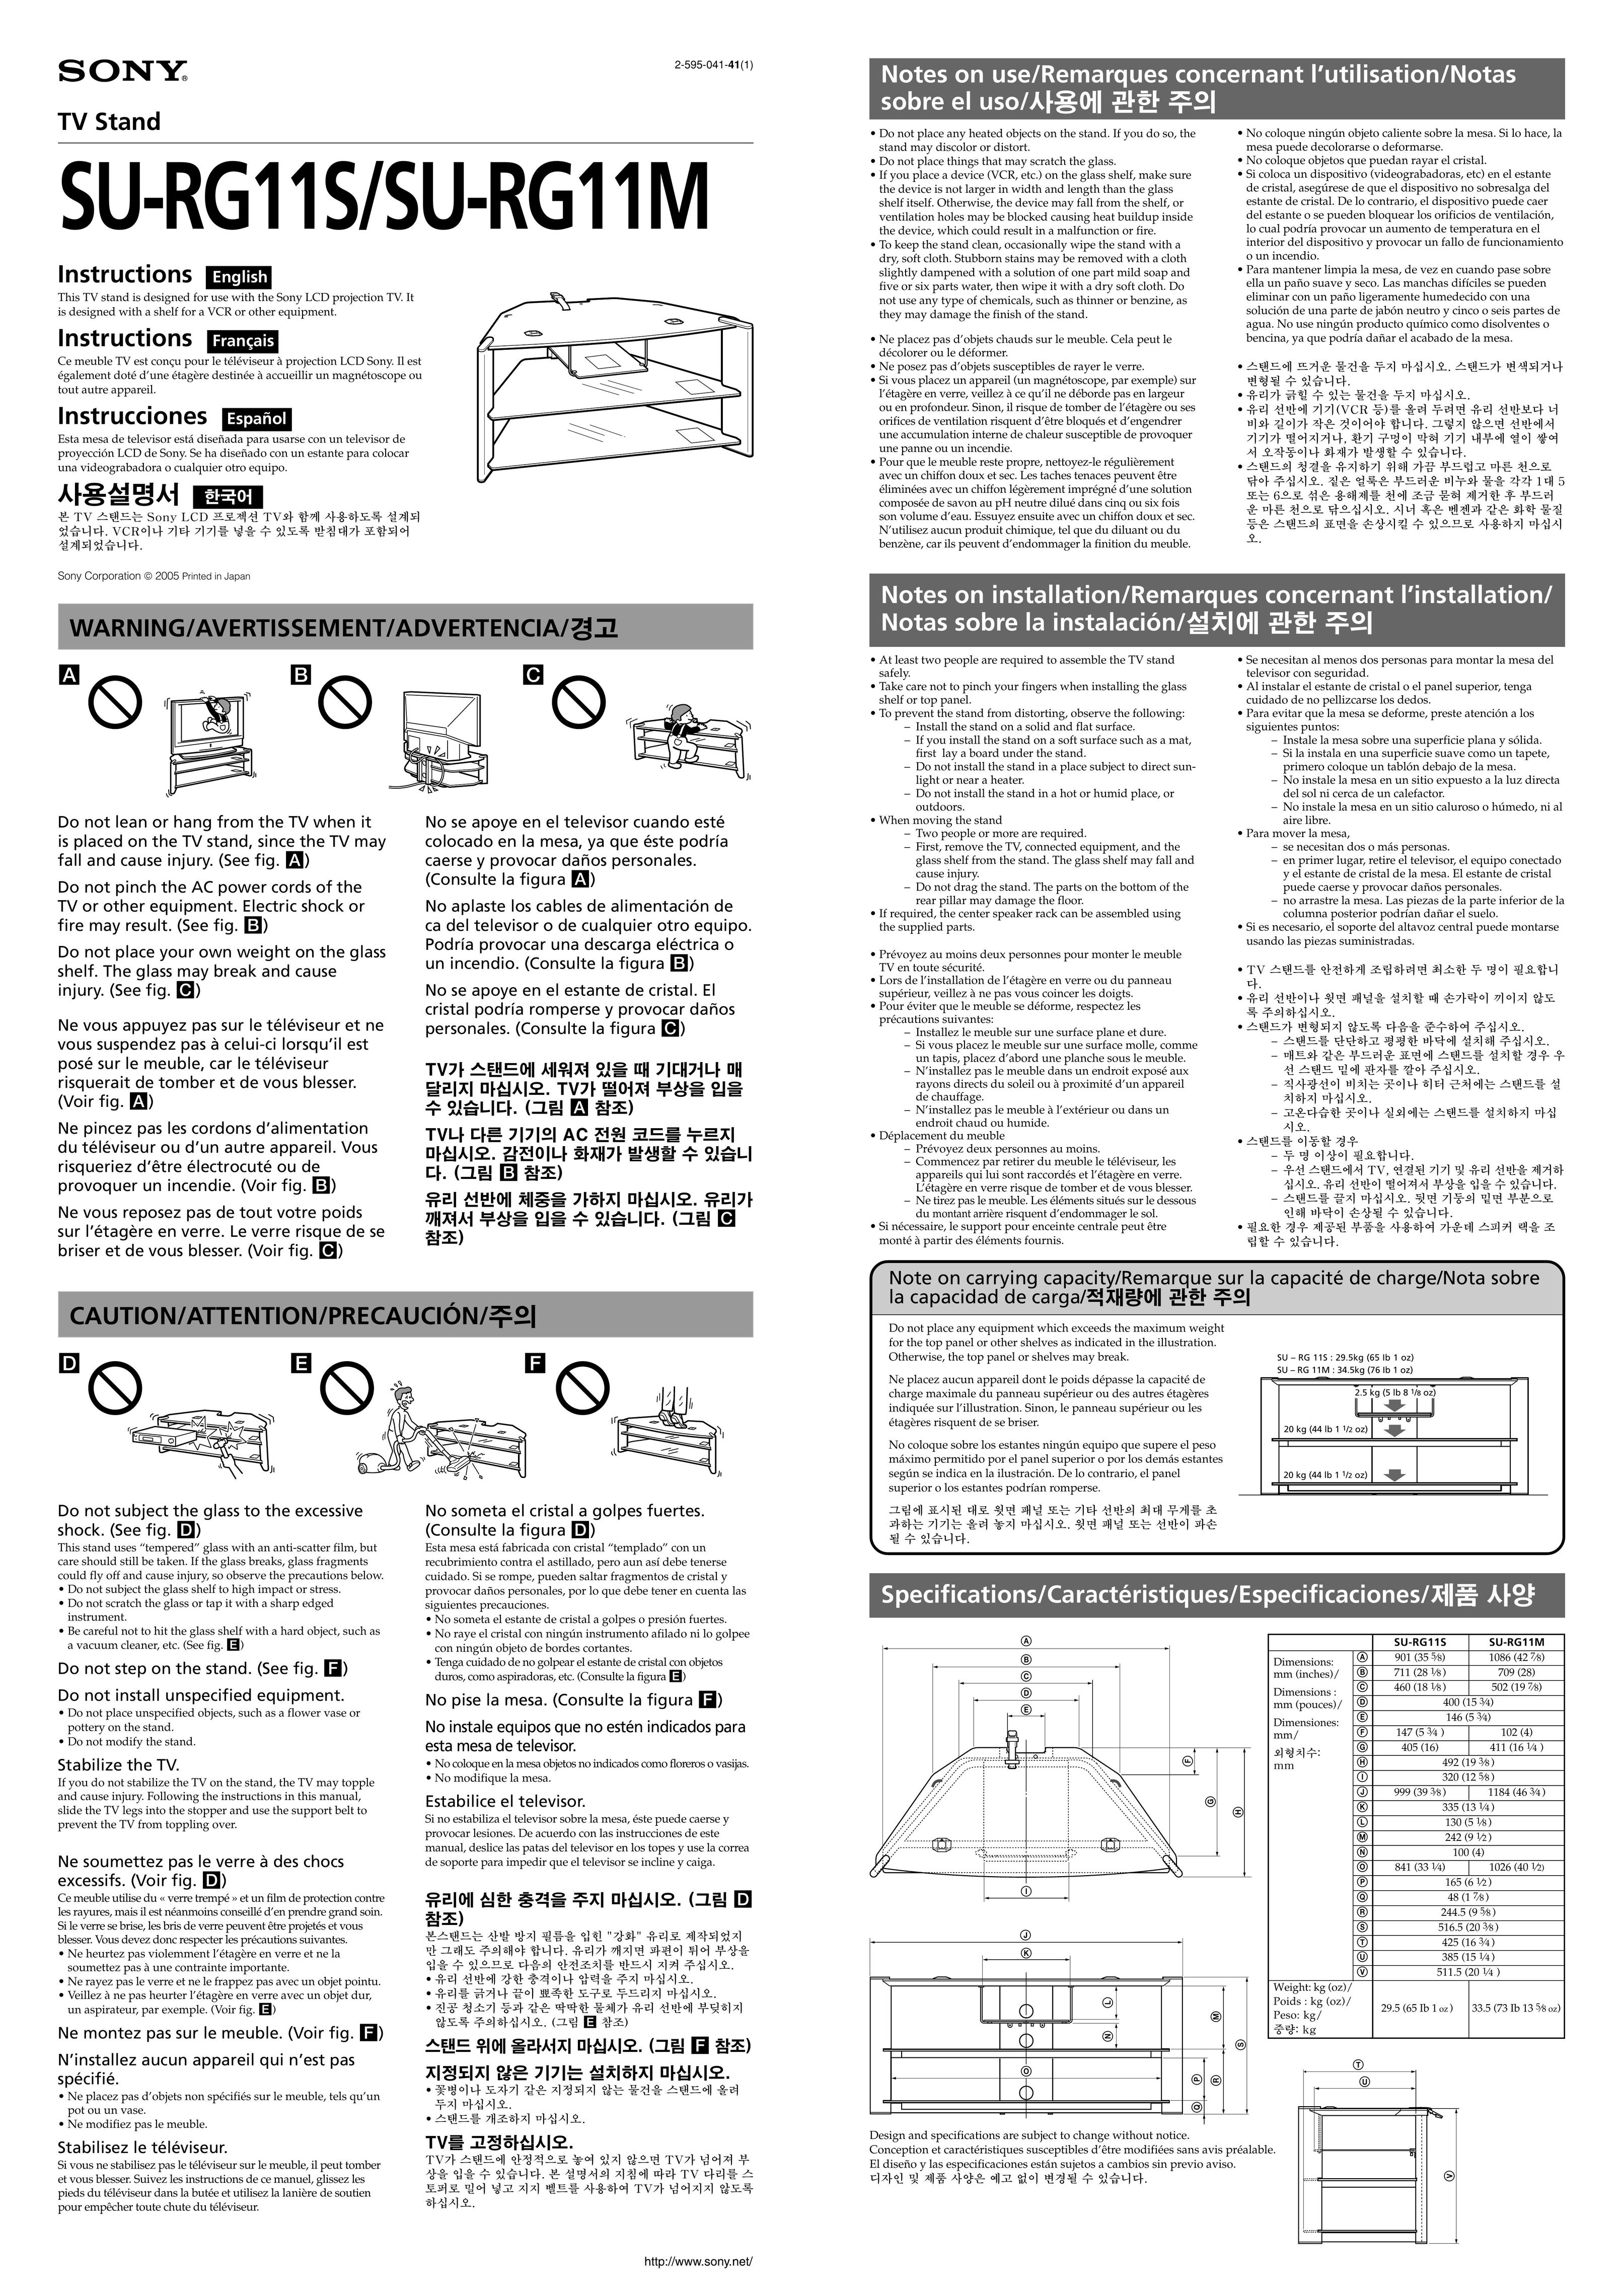 Sony SU-RG11M Indoor Furnishings User Manual